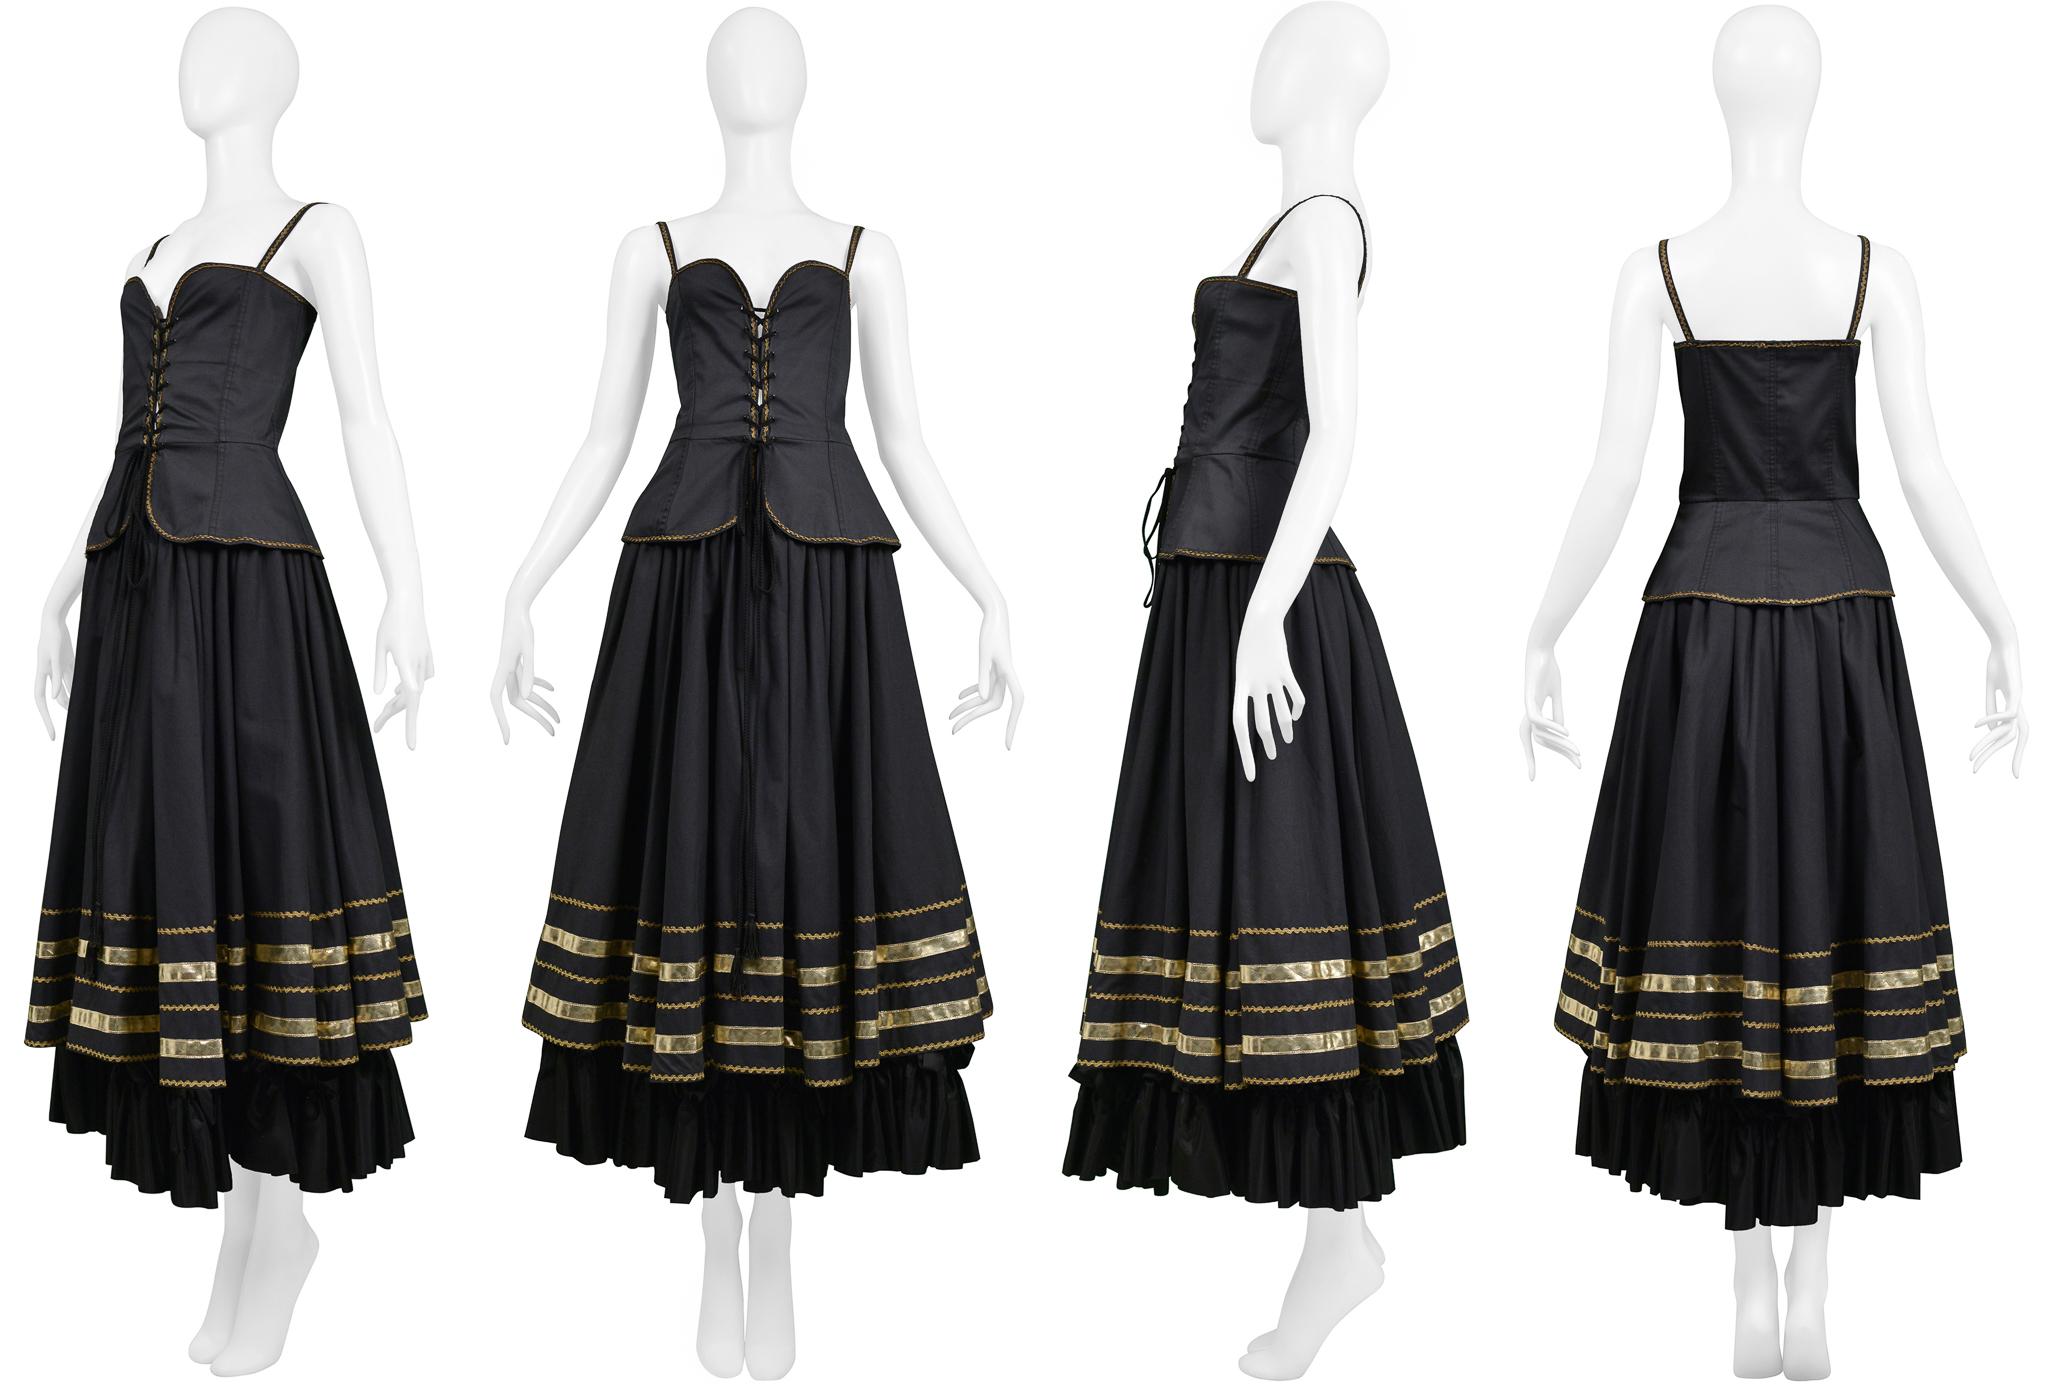 Resurrection Vintage est heureux de vous proposer un ensemble vintage Yves Saint Laurent noir et or composé d'un corset et d'une jupe paysanne. Le corset se caractérise par des lacets sur le devant, un corps ajusté et des bordures dorées. La jupe